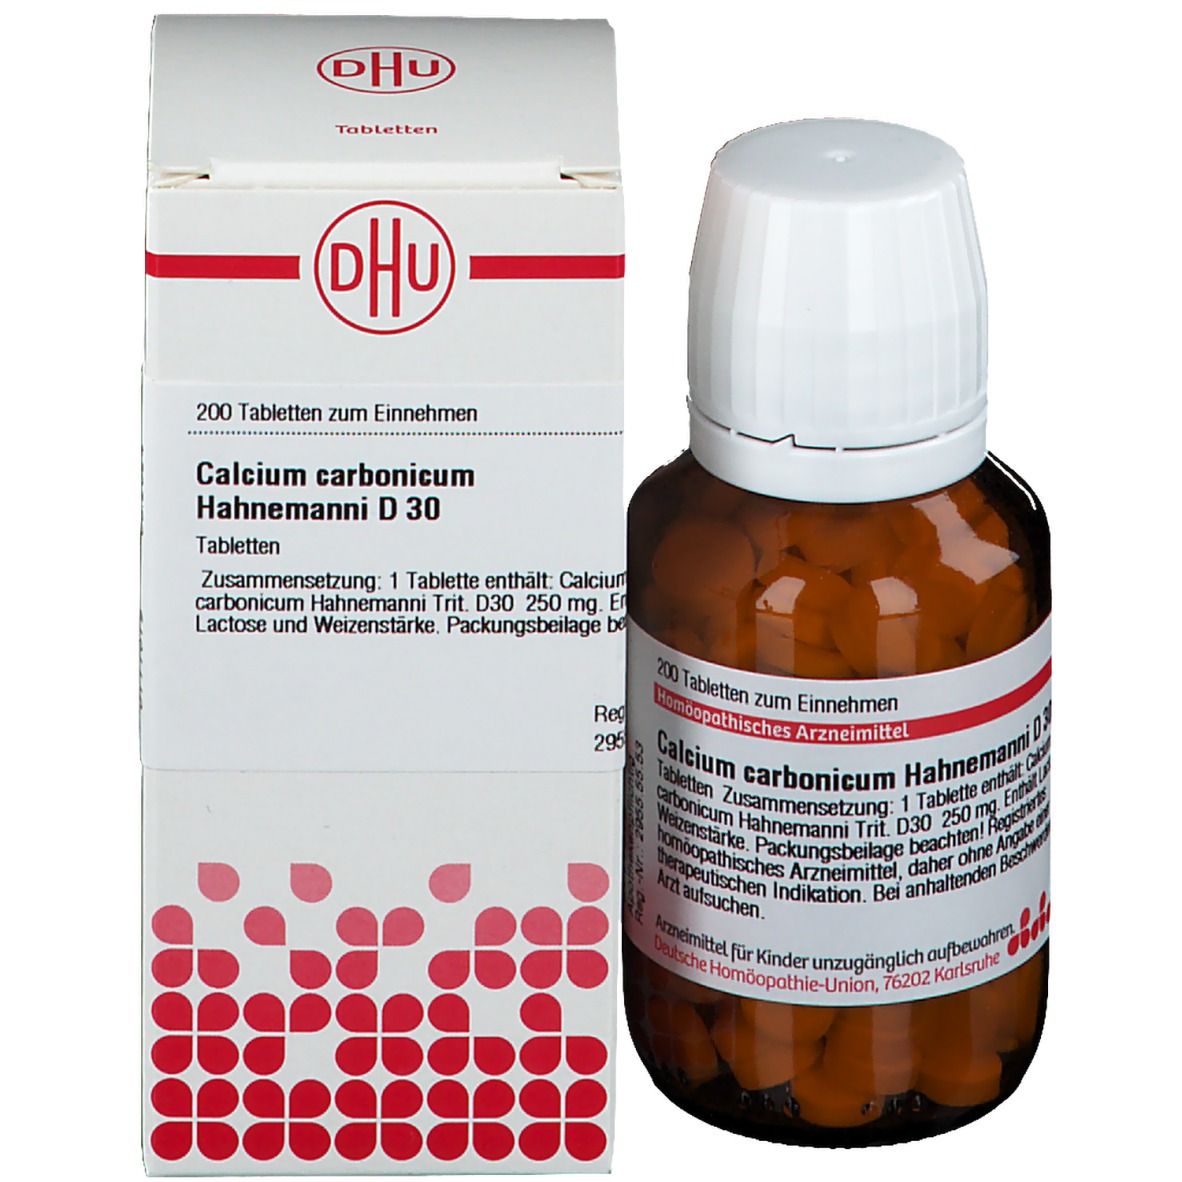 DHU Calcium Carbonicum Hahnemanni D30